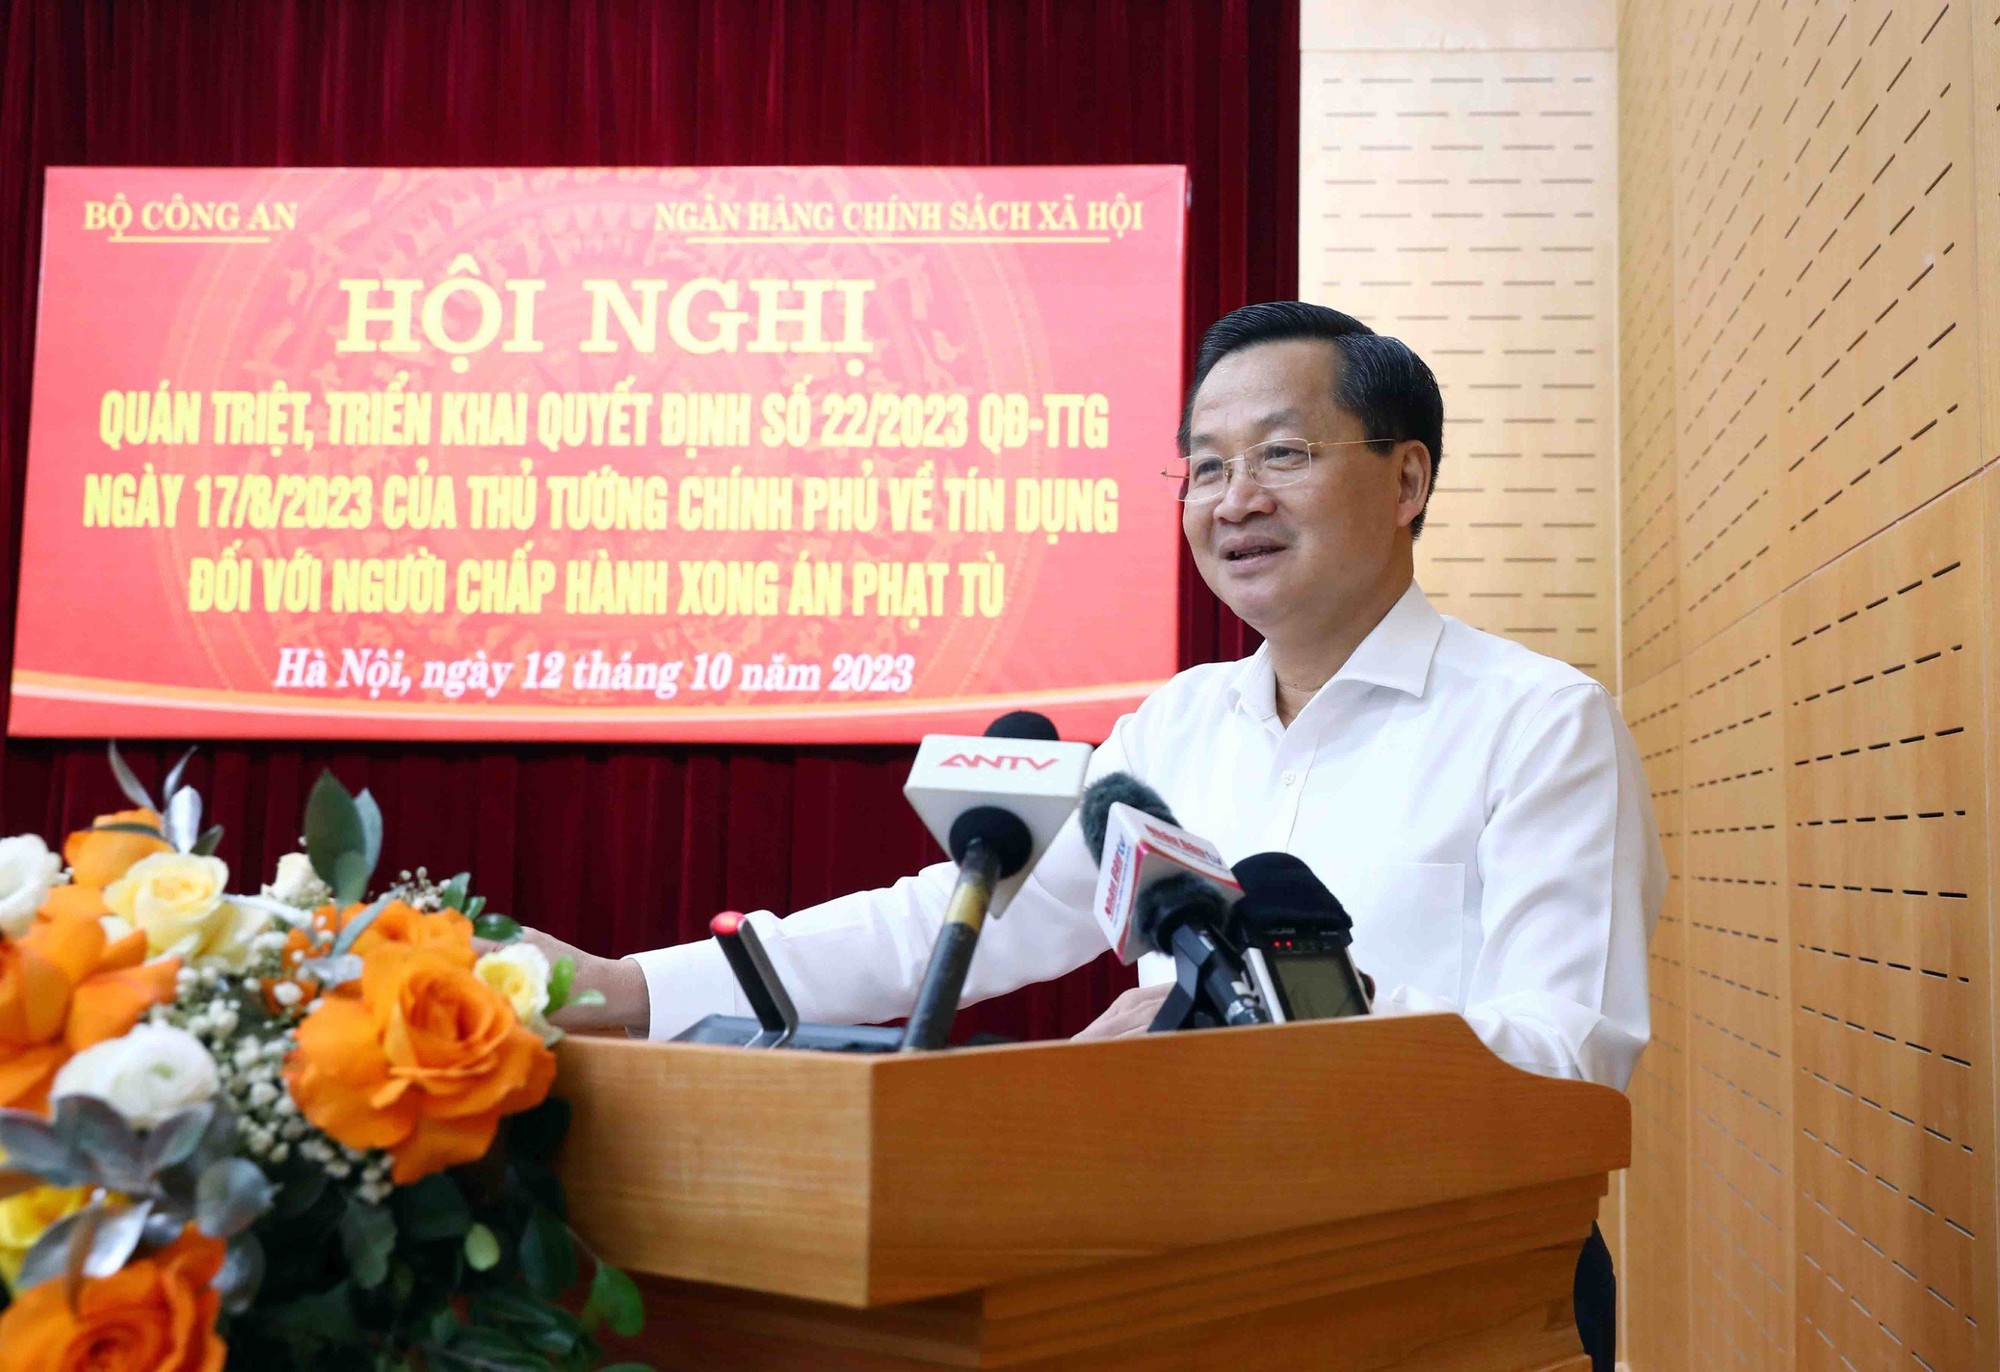 Phó Thủ tướng Lê Minh Khái: Tạo điều kiện thuận lợi nhất để người chấp hành xong án phạt tù tiếp cận nguồn vốn ưu đãi của Chính phủ. Ảnh: vGP